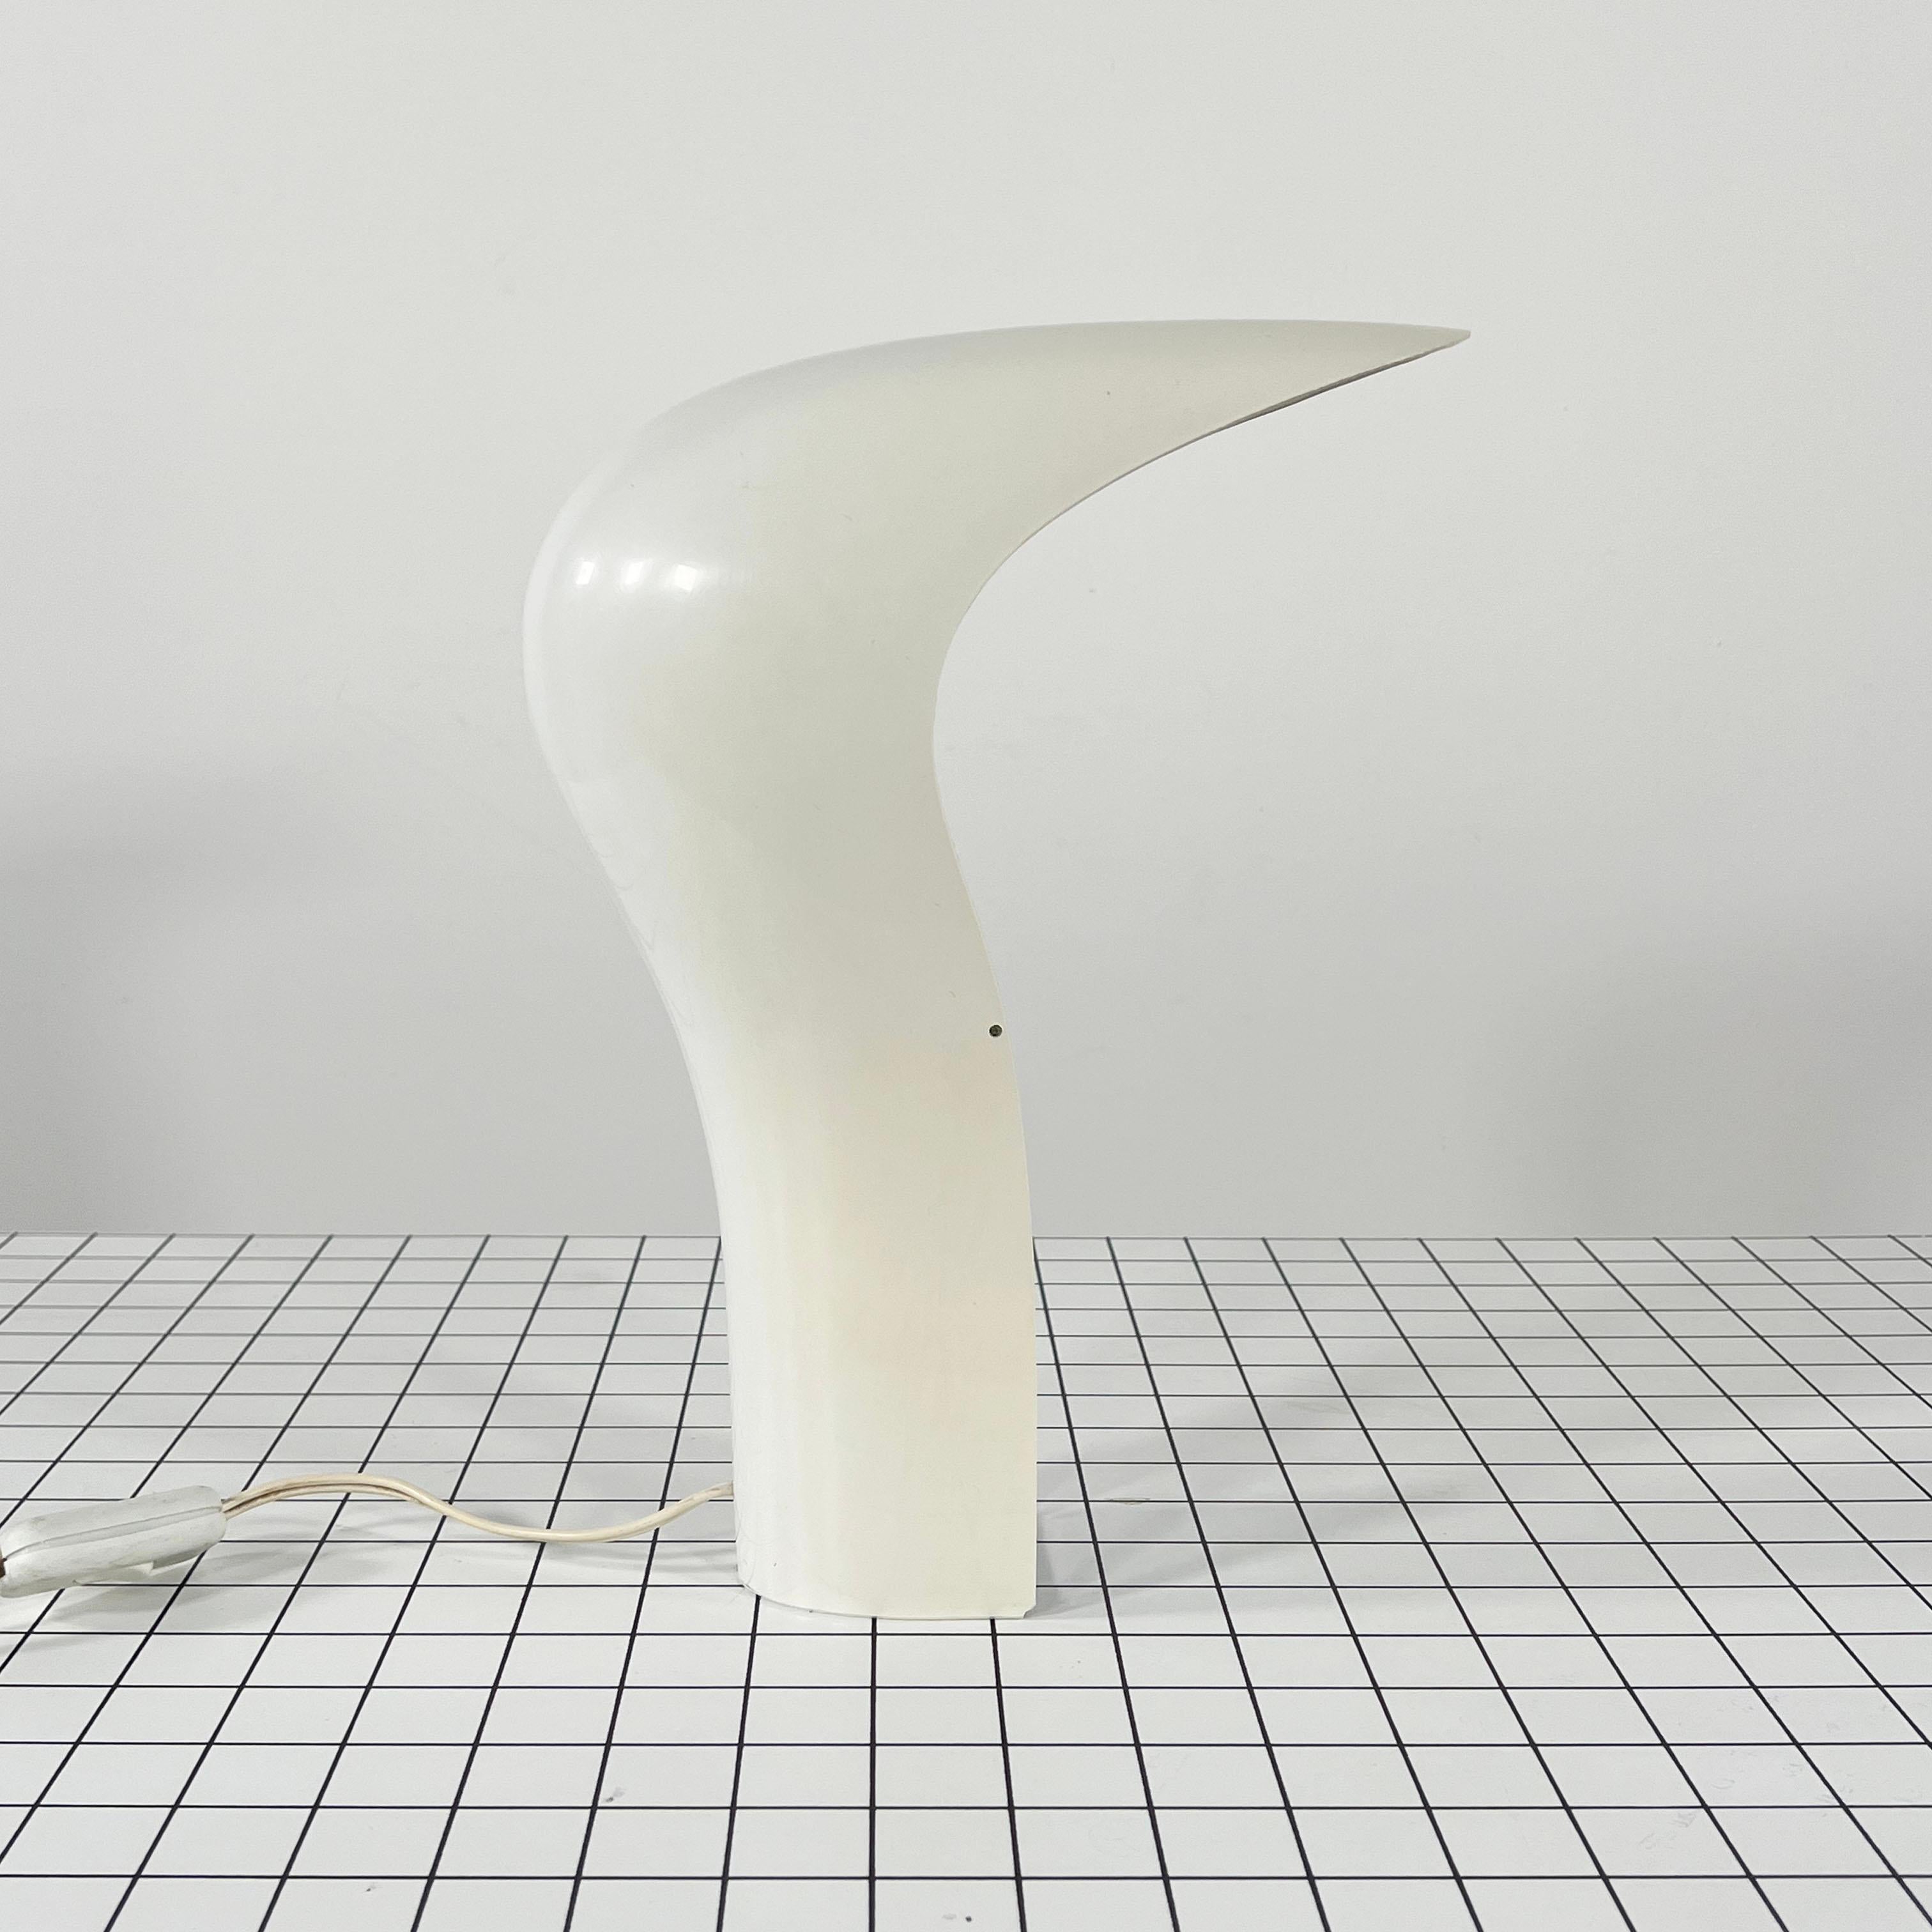 White 'Pelota' Desk Lamp by Cesare Casati for Lamperti Studio D.A., Italy, 1970s For Sale 1